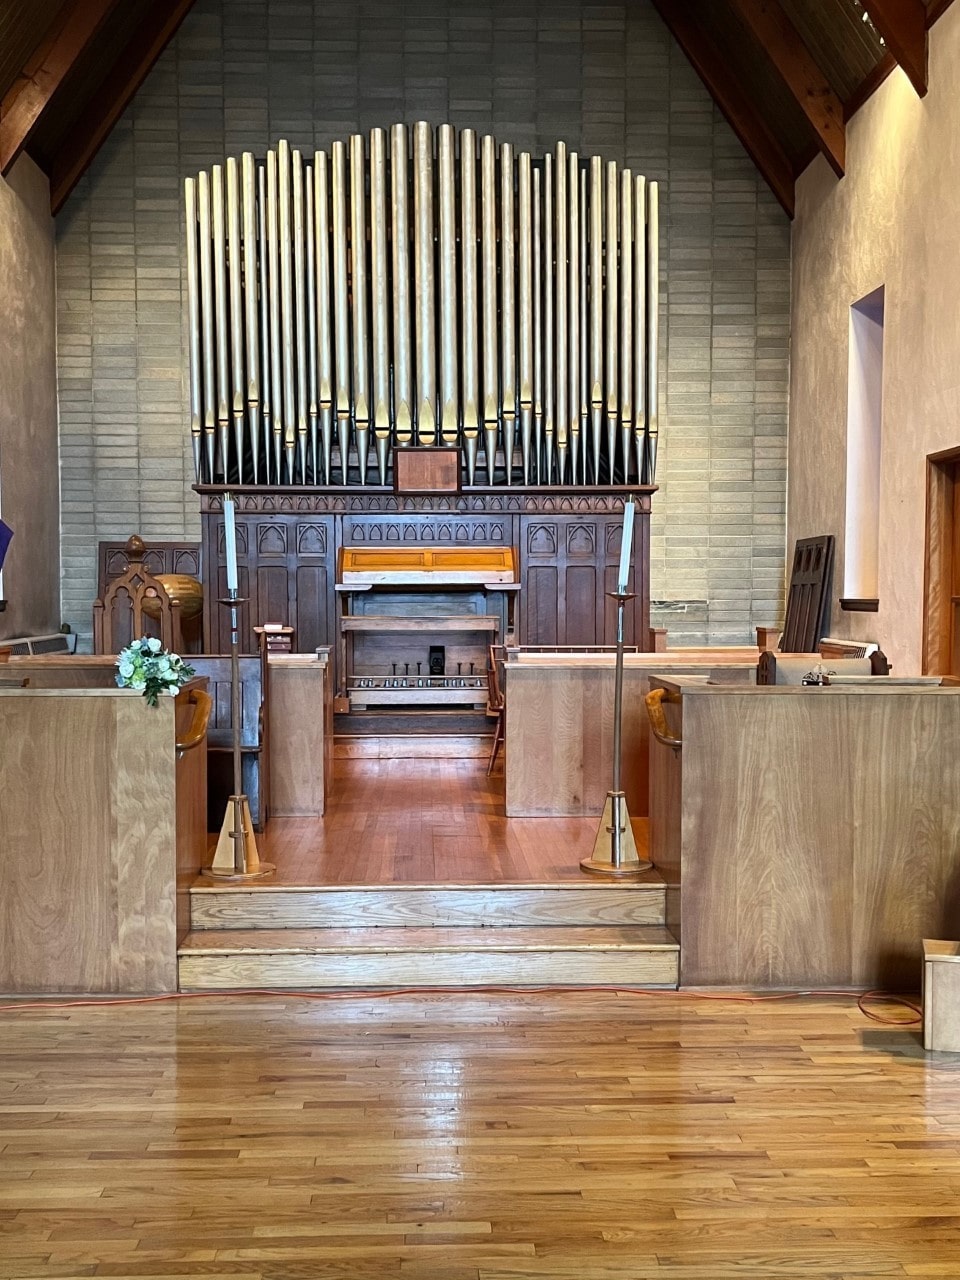 Church Pipe Organ